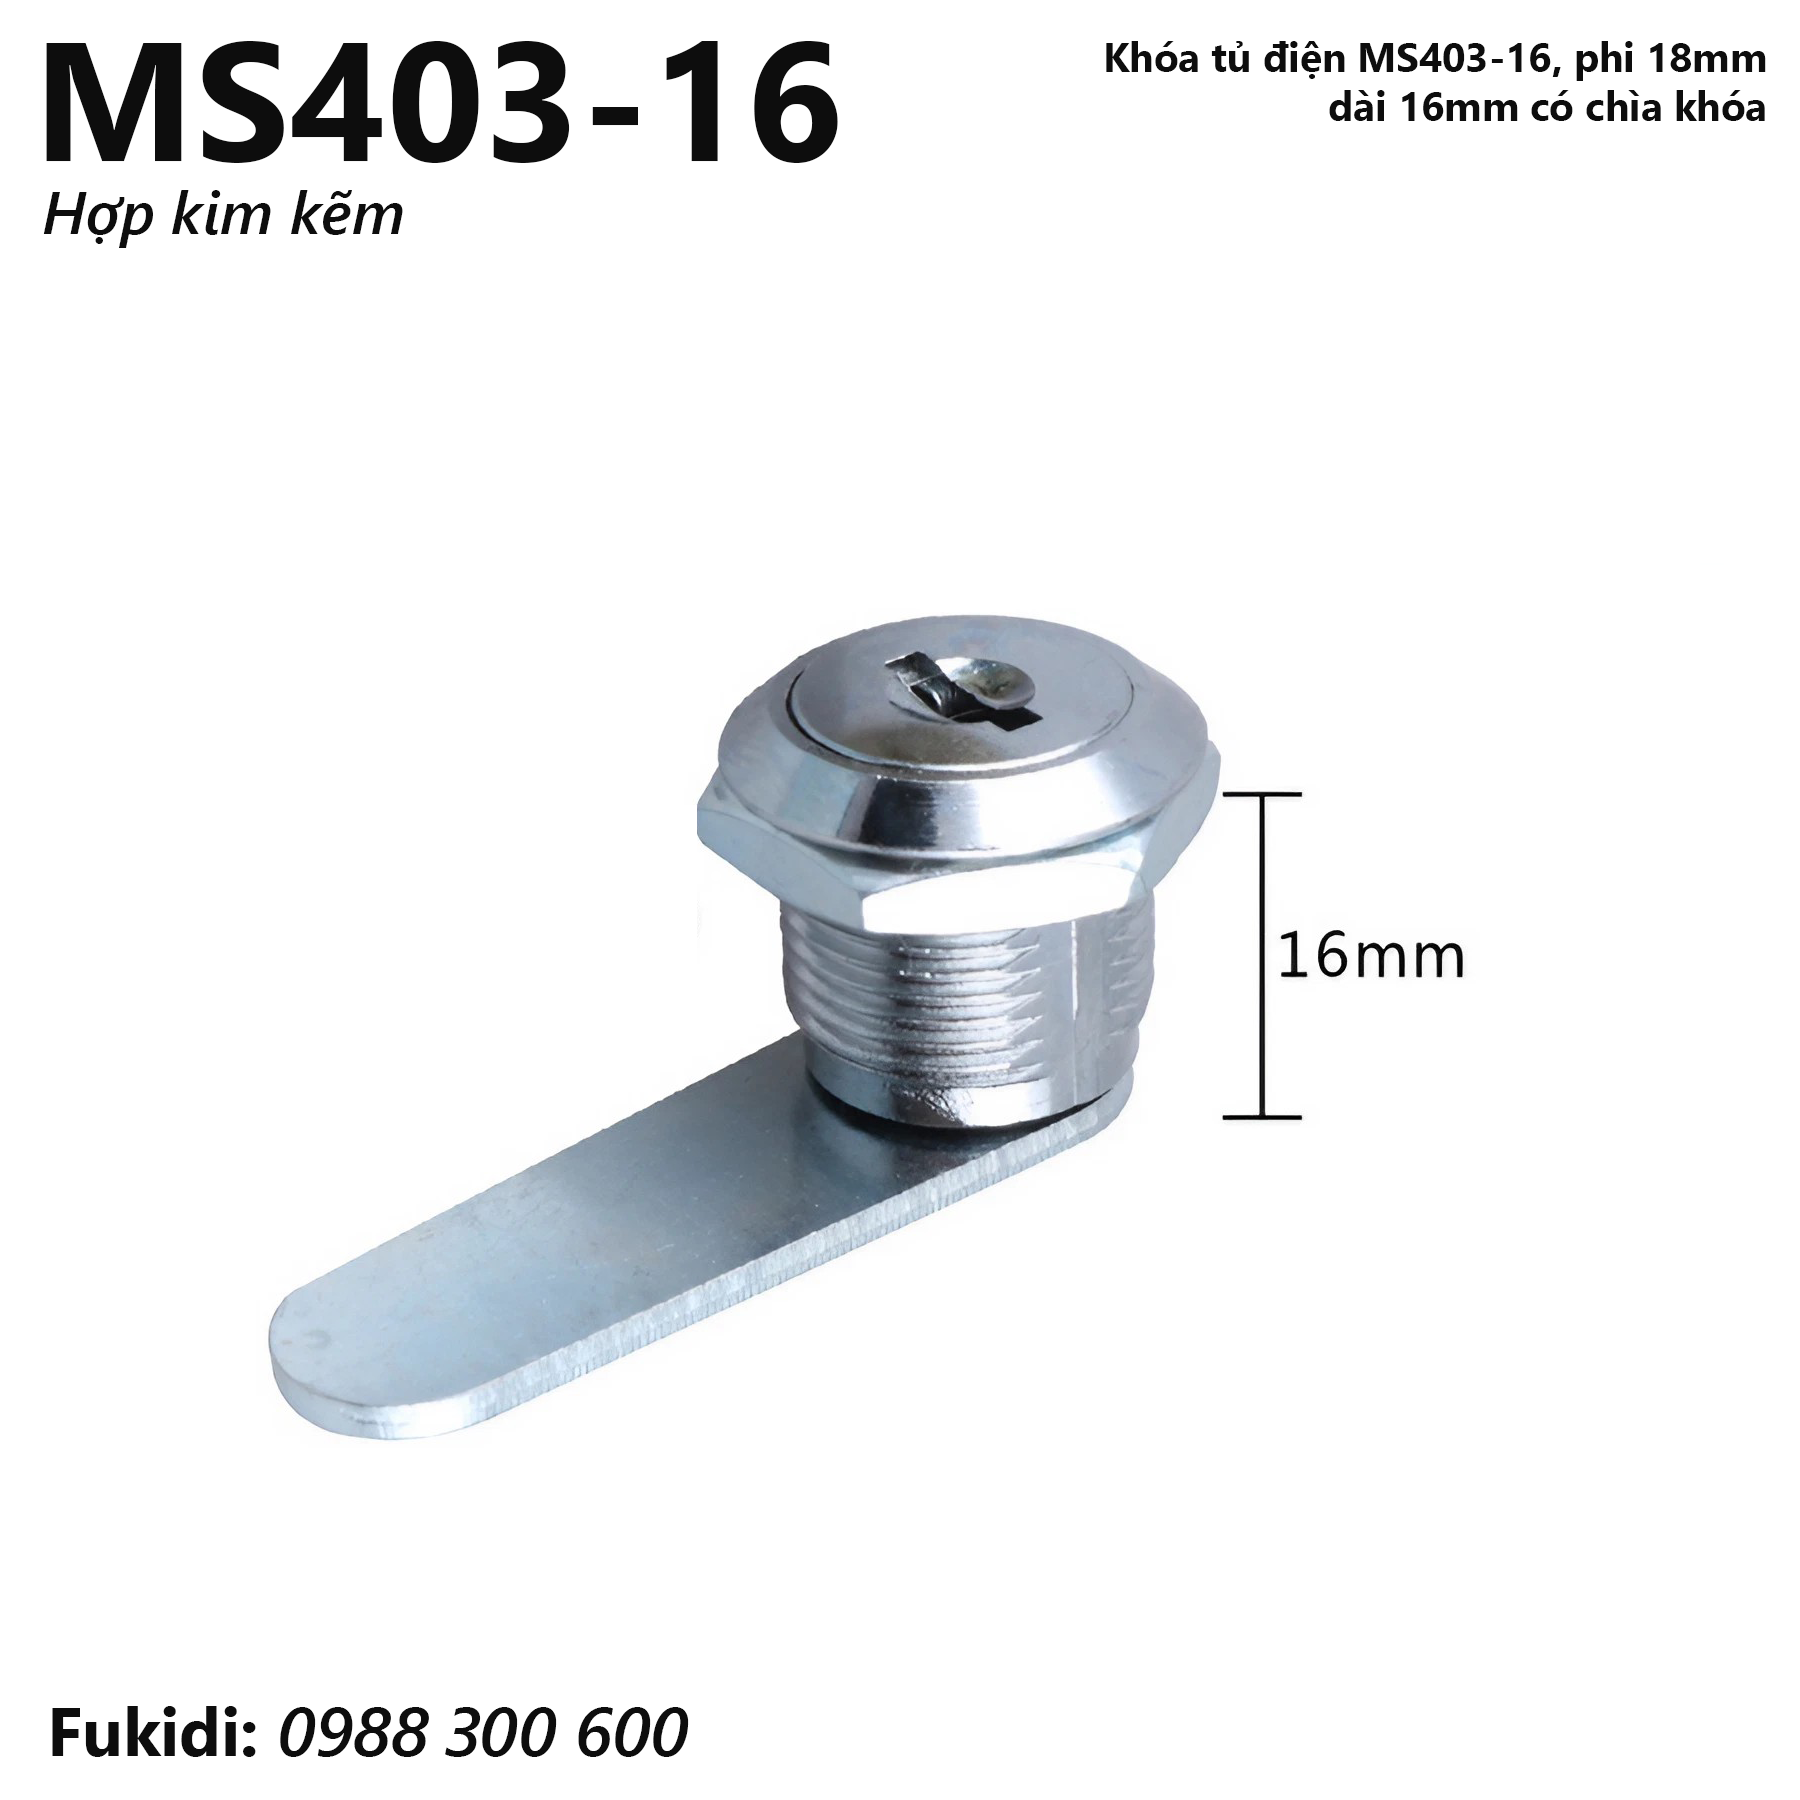 Khóa tủ điện hợp kim kẽm, phi 18mm, dài 16mm có chìa khóa - MS403-16